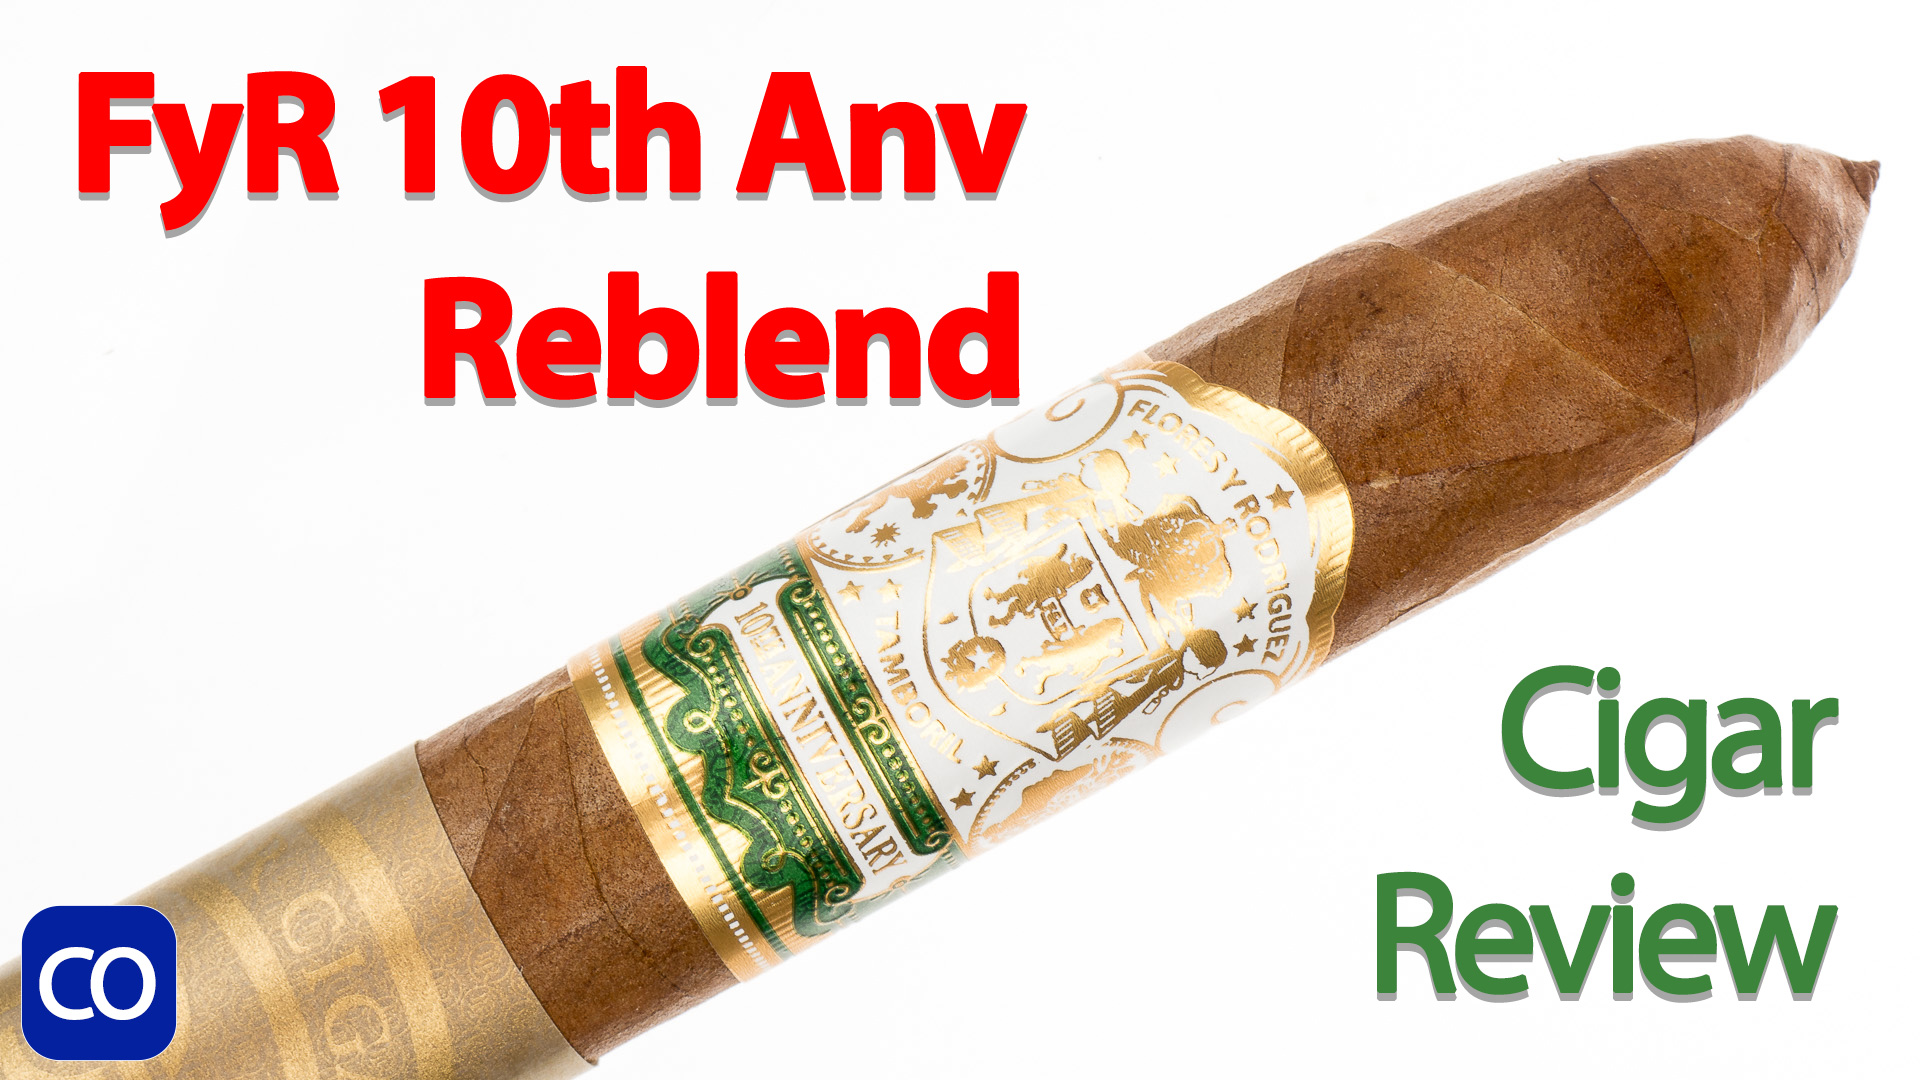 Flores y Rodriguez 10th Anniversary Reserva Limitada Figurado Reblend Cigar Review